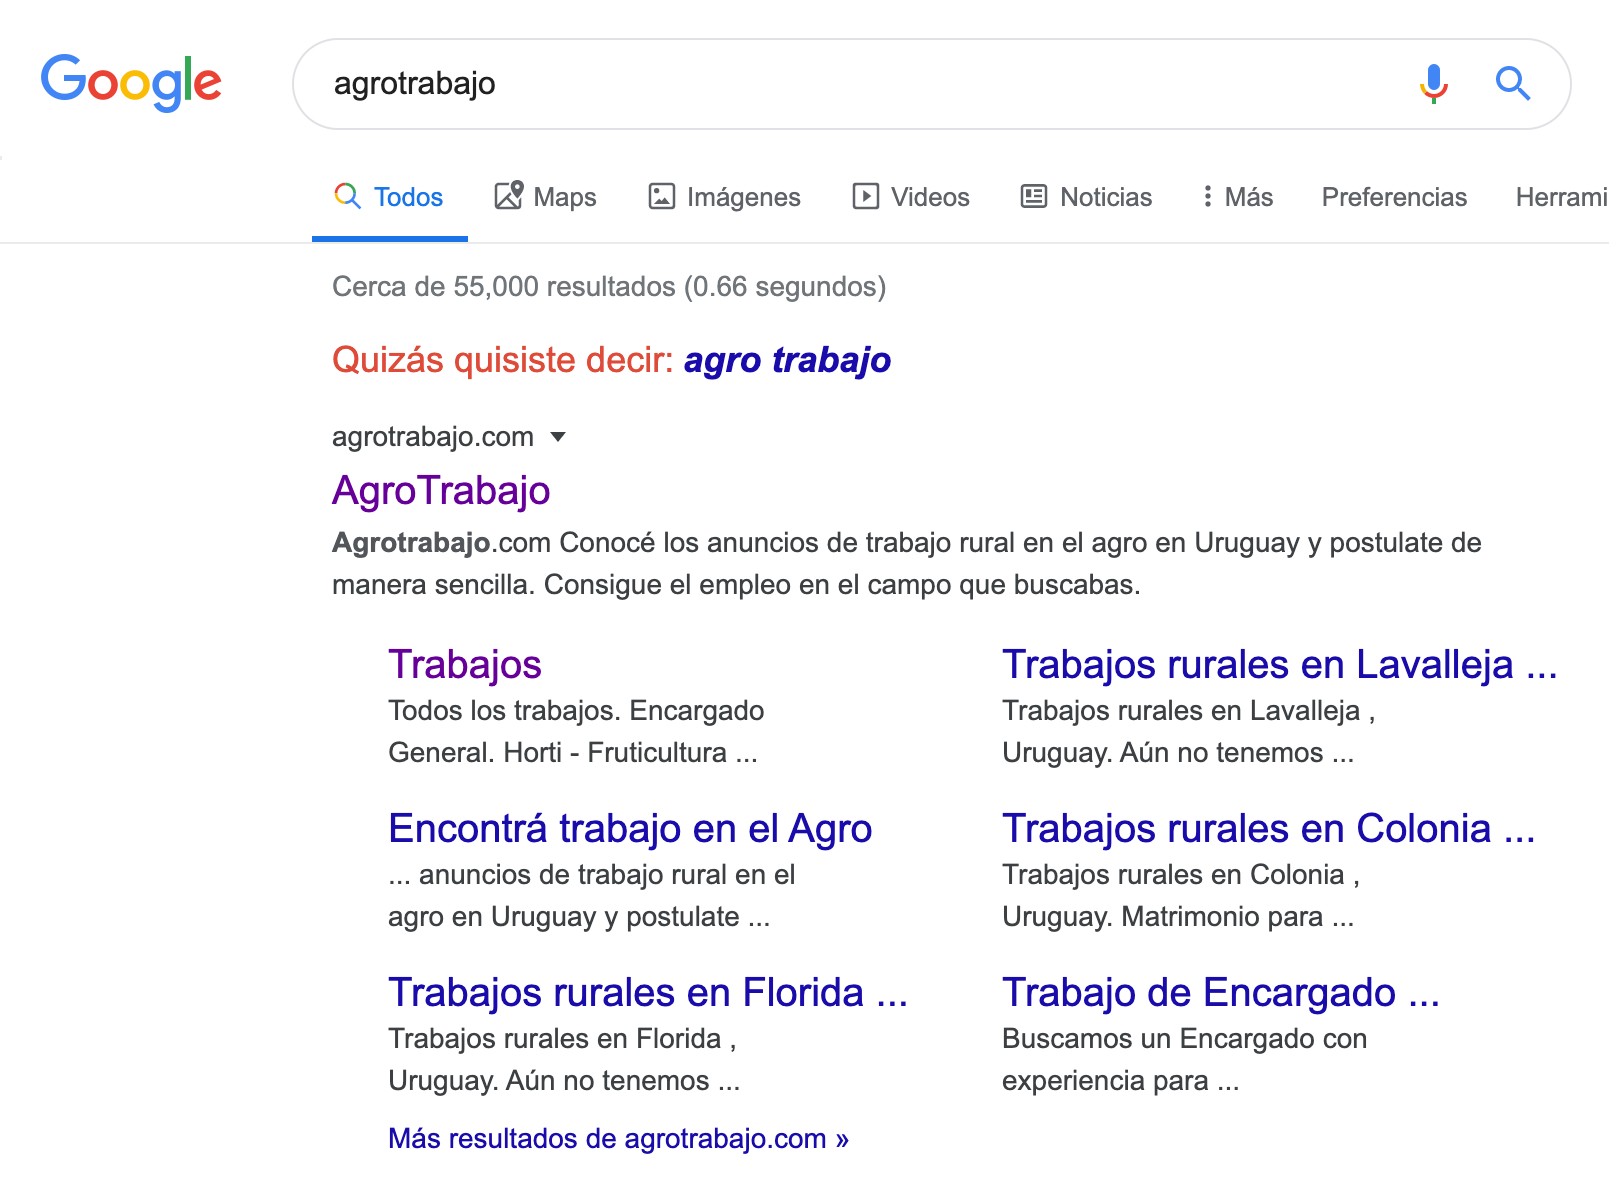 search for "agrotrabajo" in google